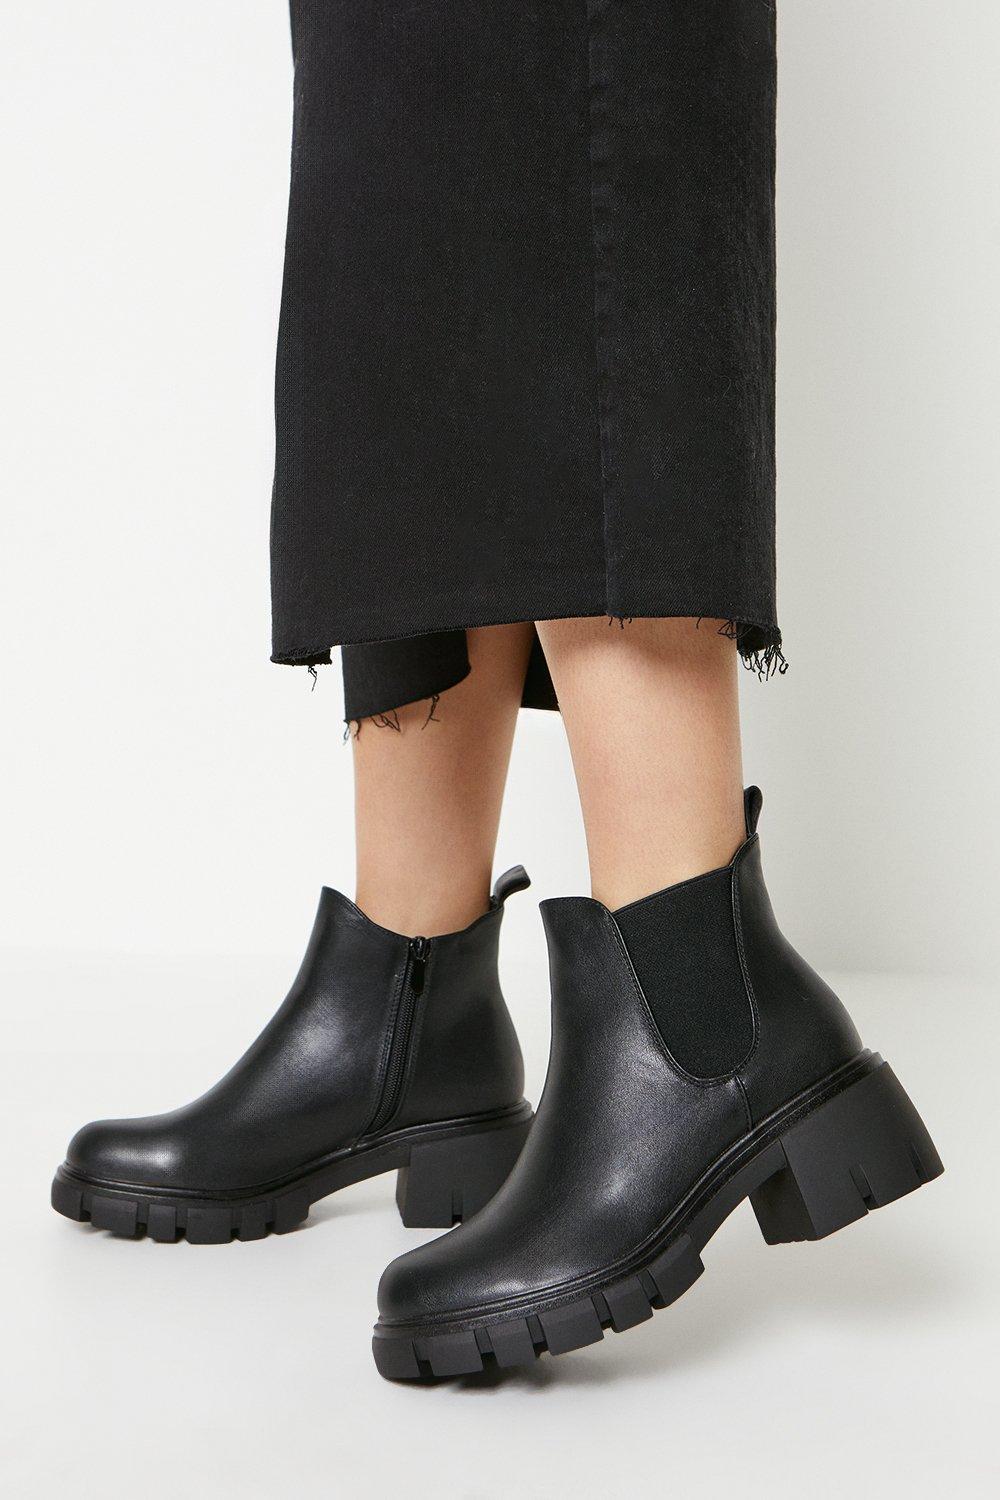 Women’s Faith: Mala Chunky Cleated Heel Chelsea Boots - black - 8